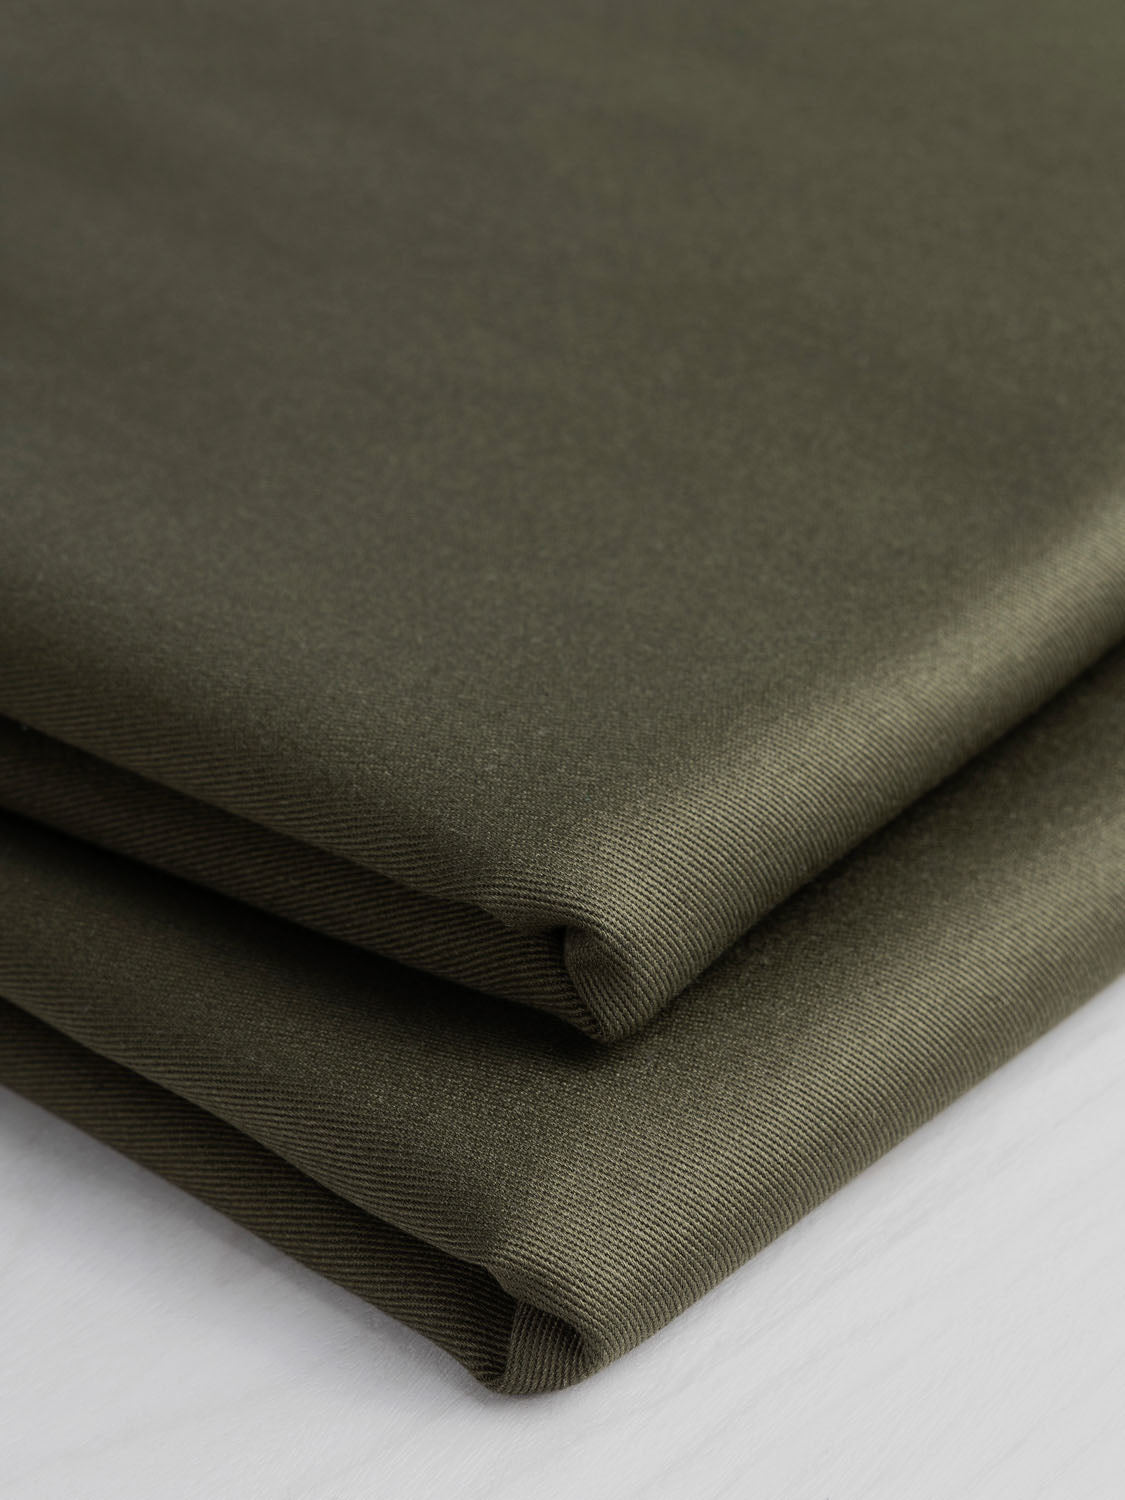 Midweight  Organic Cotton Twill - Olive | Core Fabrics